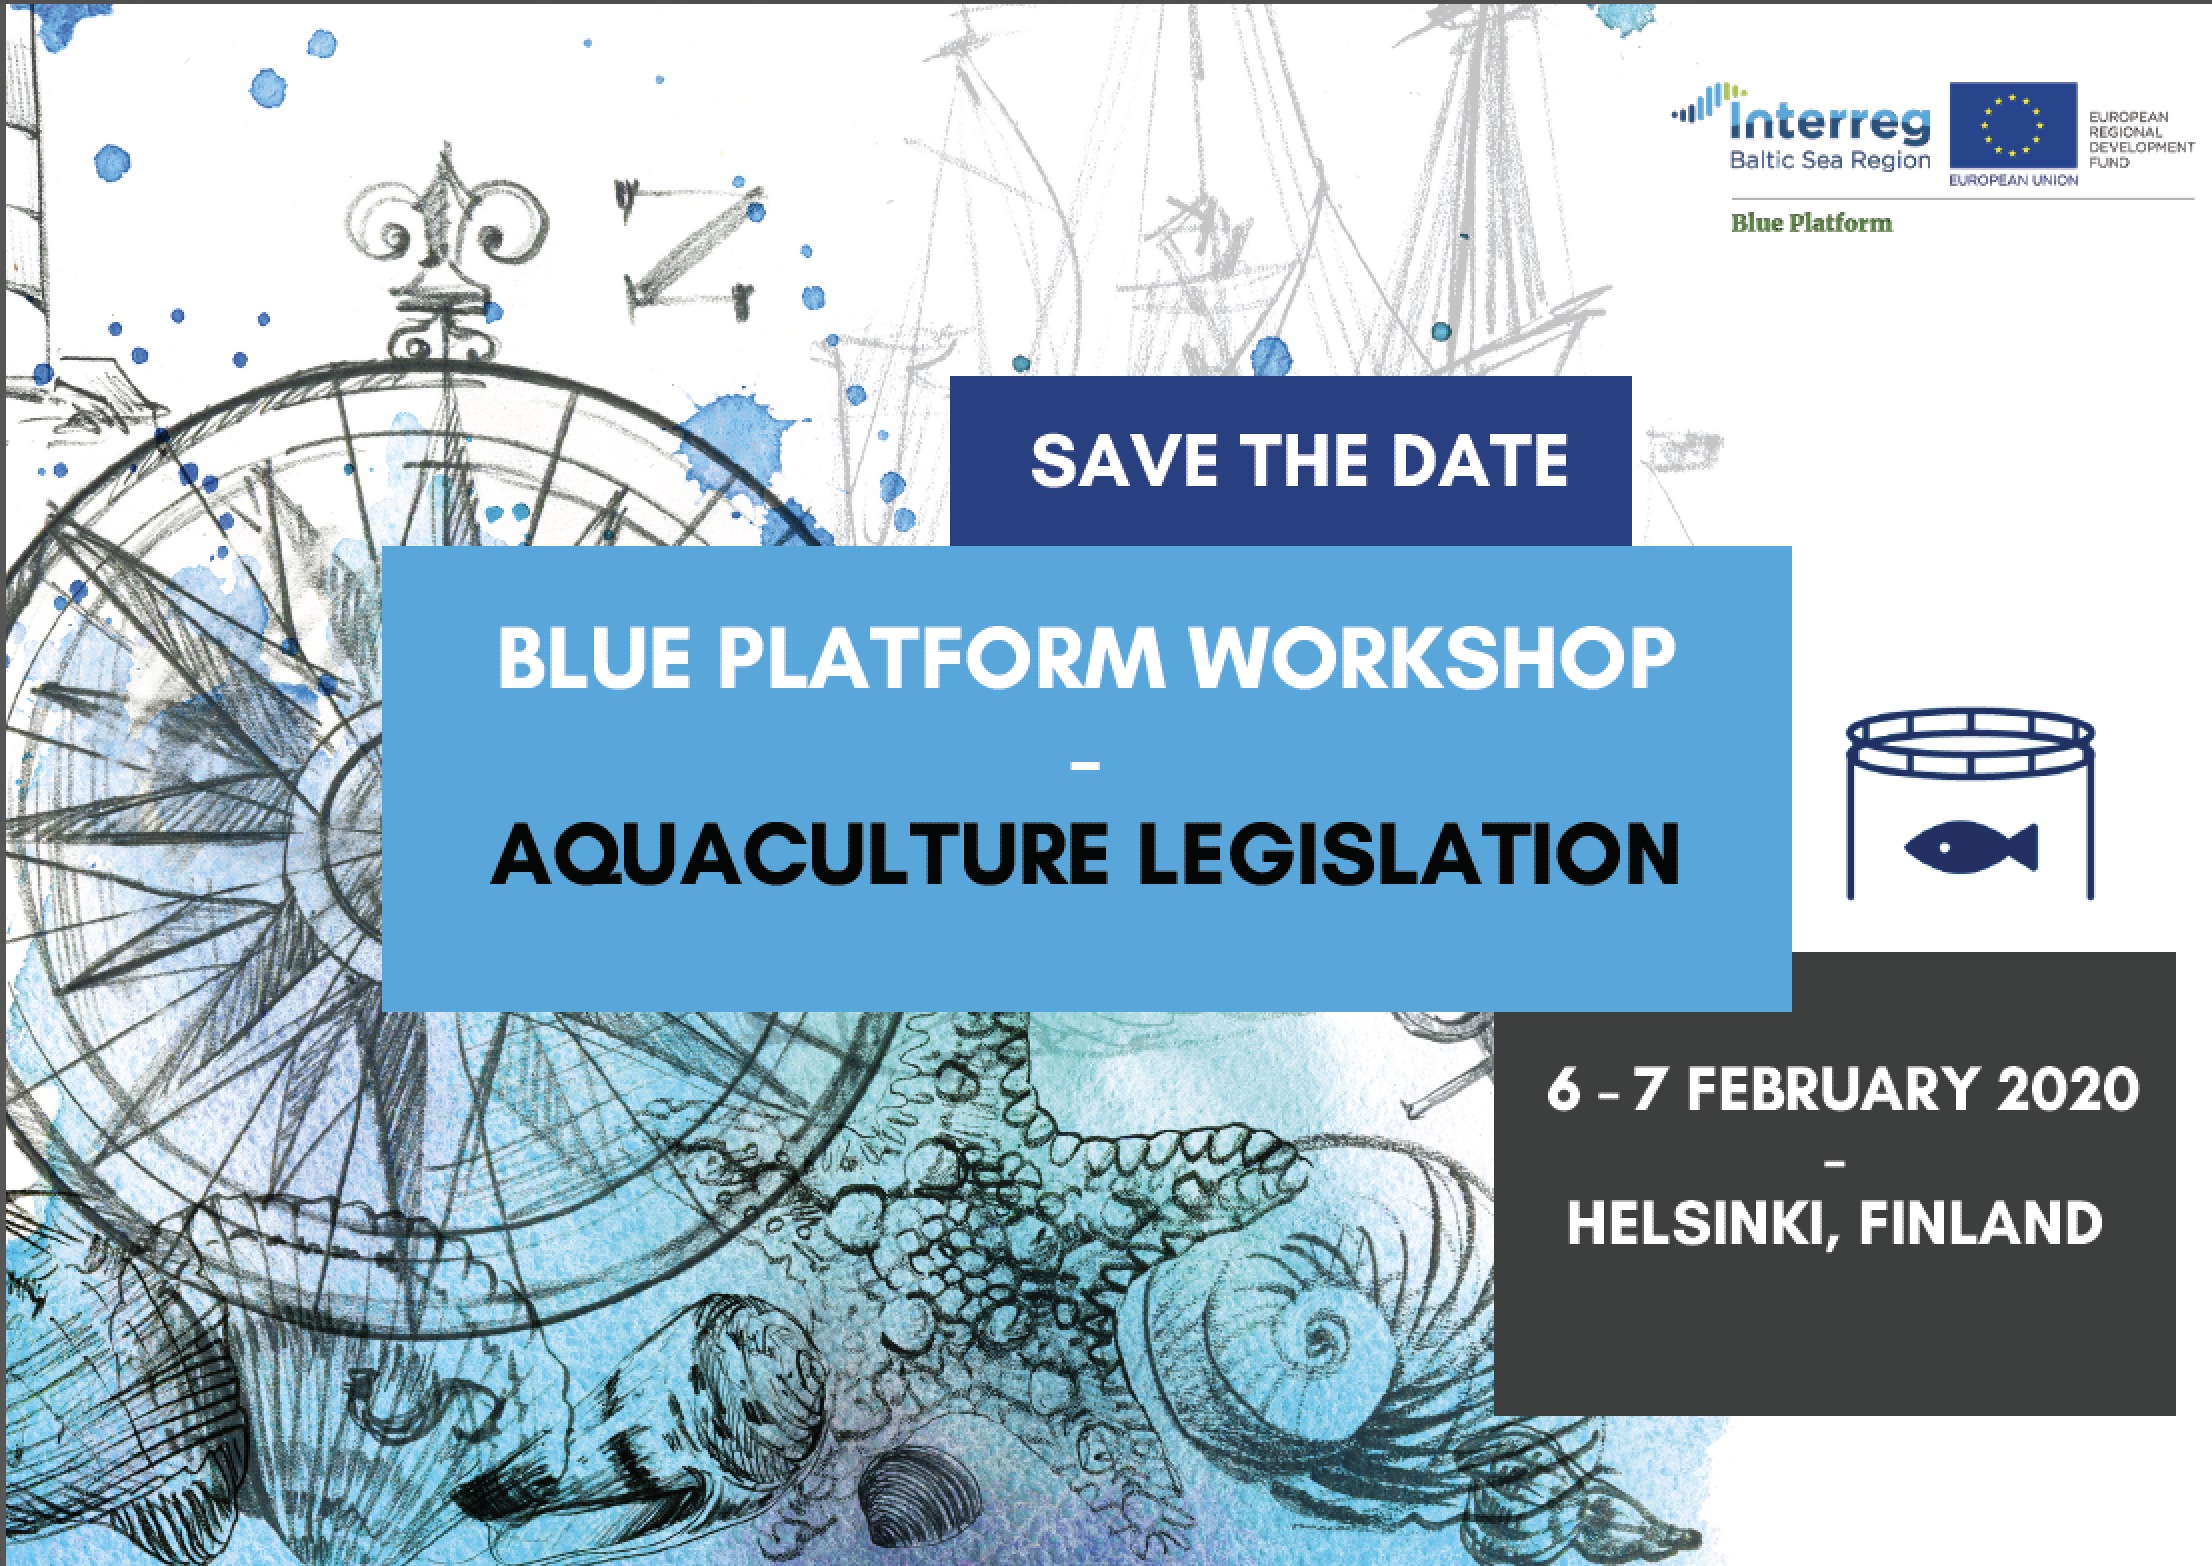 Join Blue Platform to co-develop an Aquaculture Legislation Position Paper